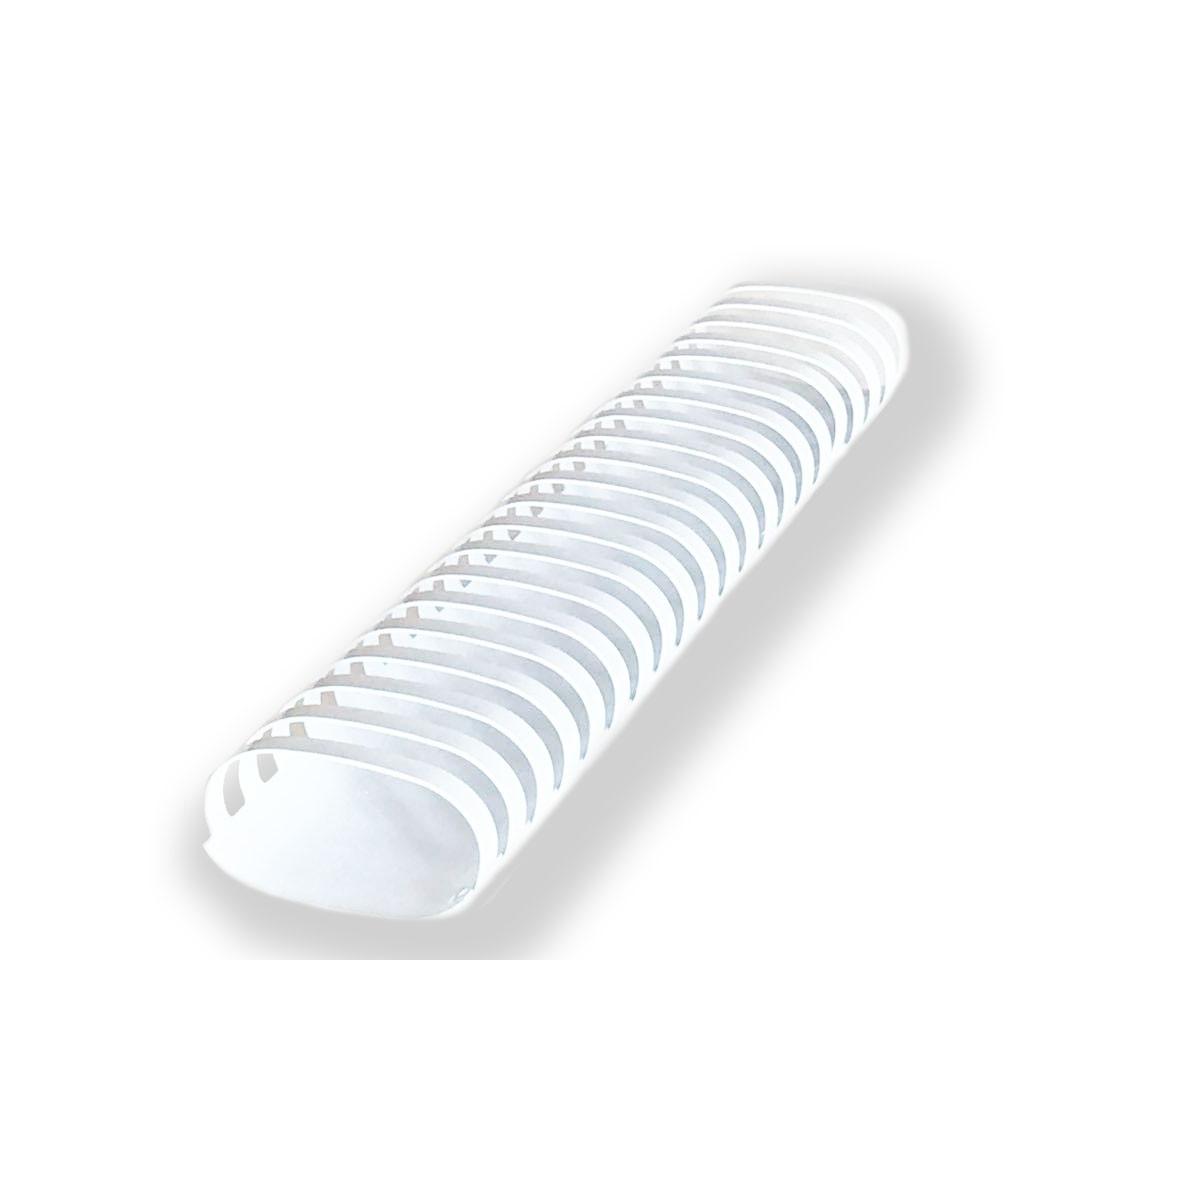 Siam - spirale - dorso plastico ovale - 38 mm - capacita' 340 fogli - confezione 50 pz